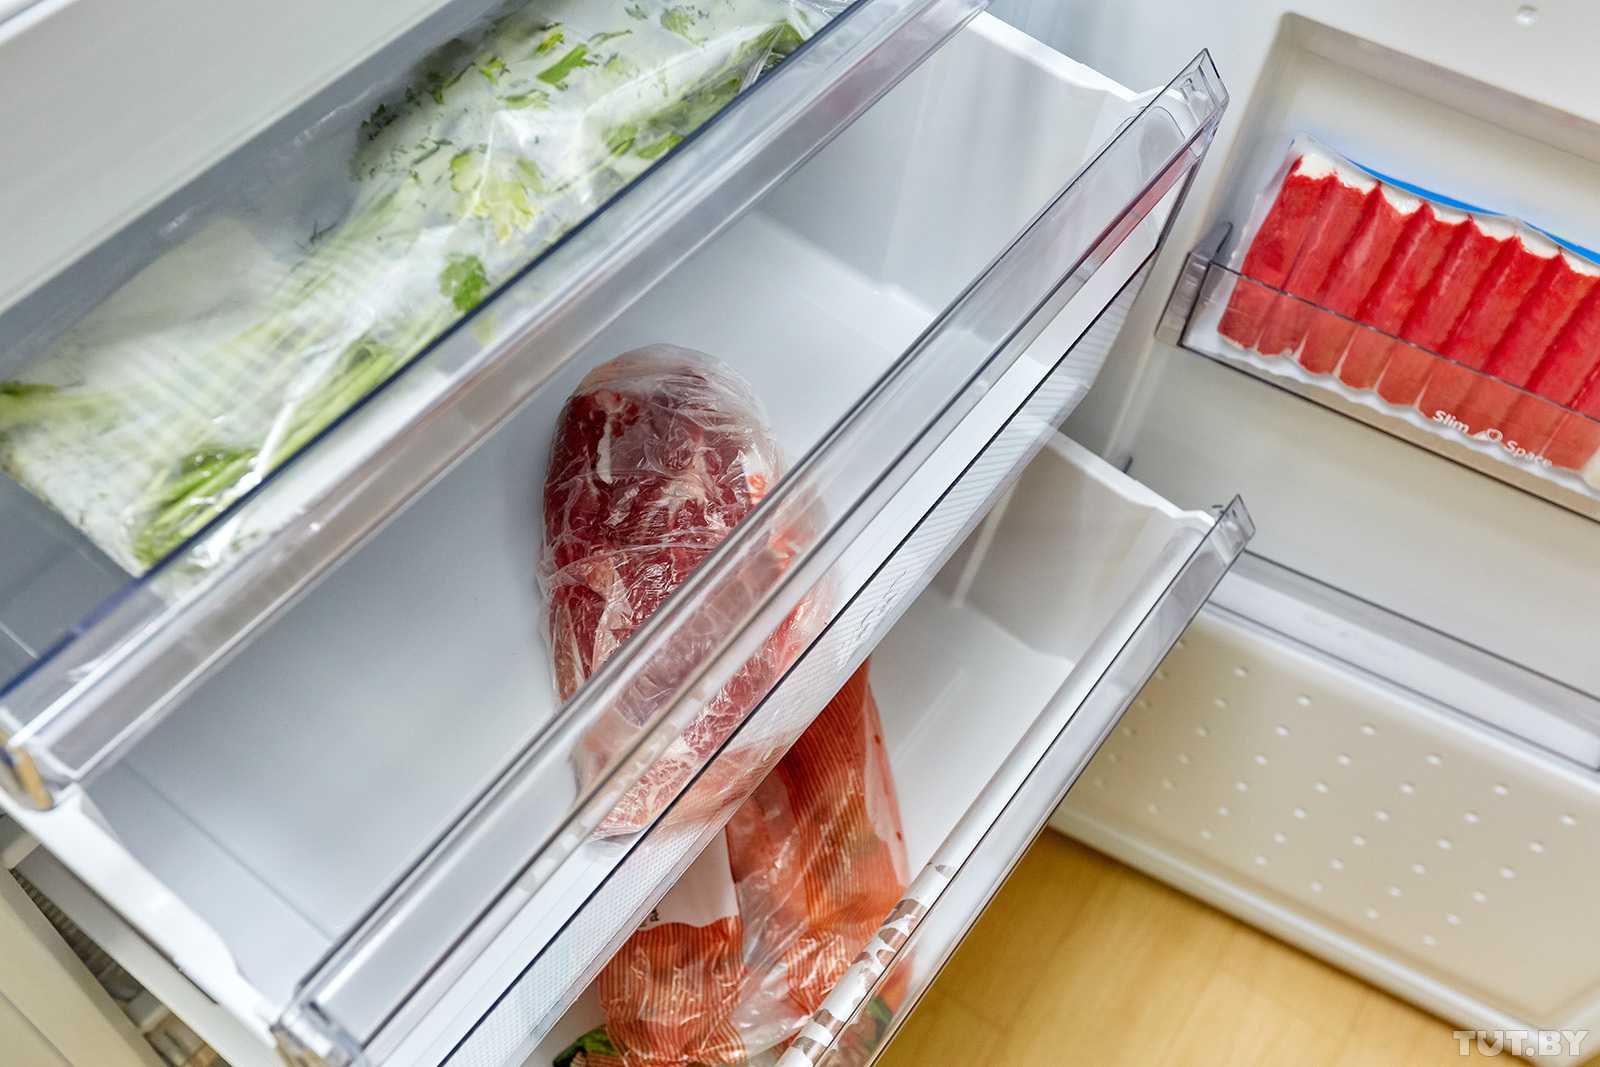 Холодильник с заморозкой. Хранение мяса в холодильнике. Хранение продуктов в морозилке. Холодильник с продуктами. Холодильник для заморозки.